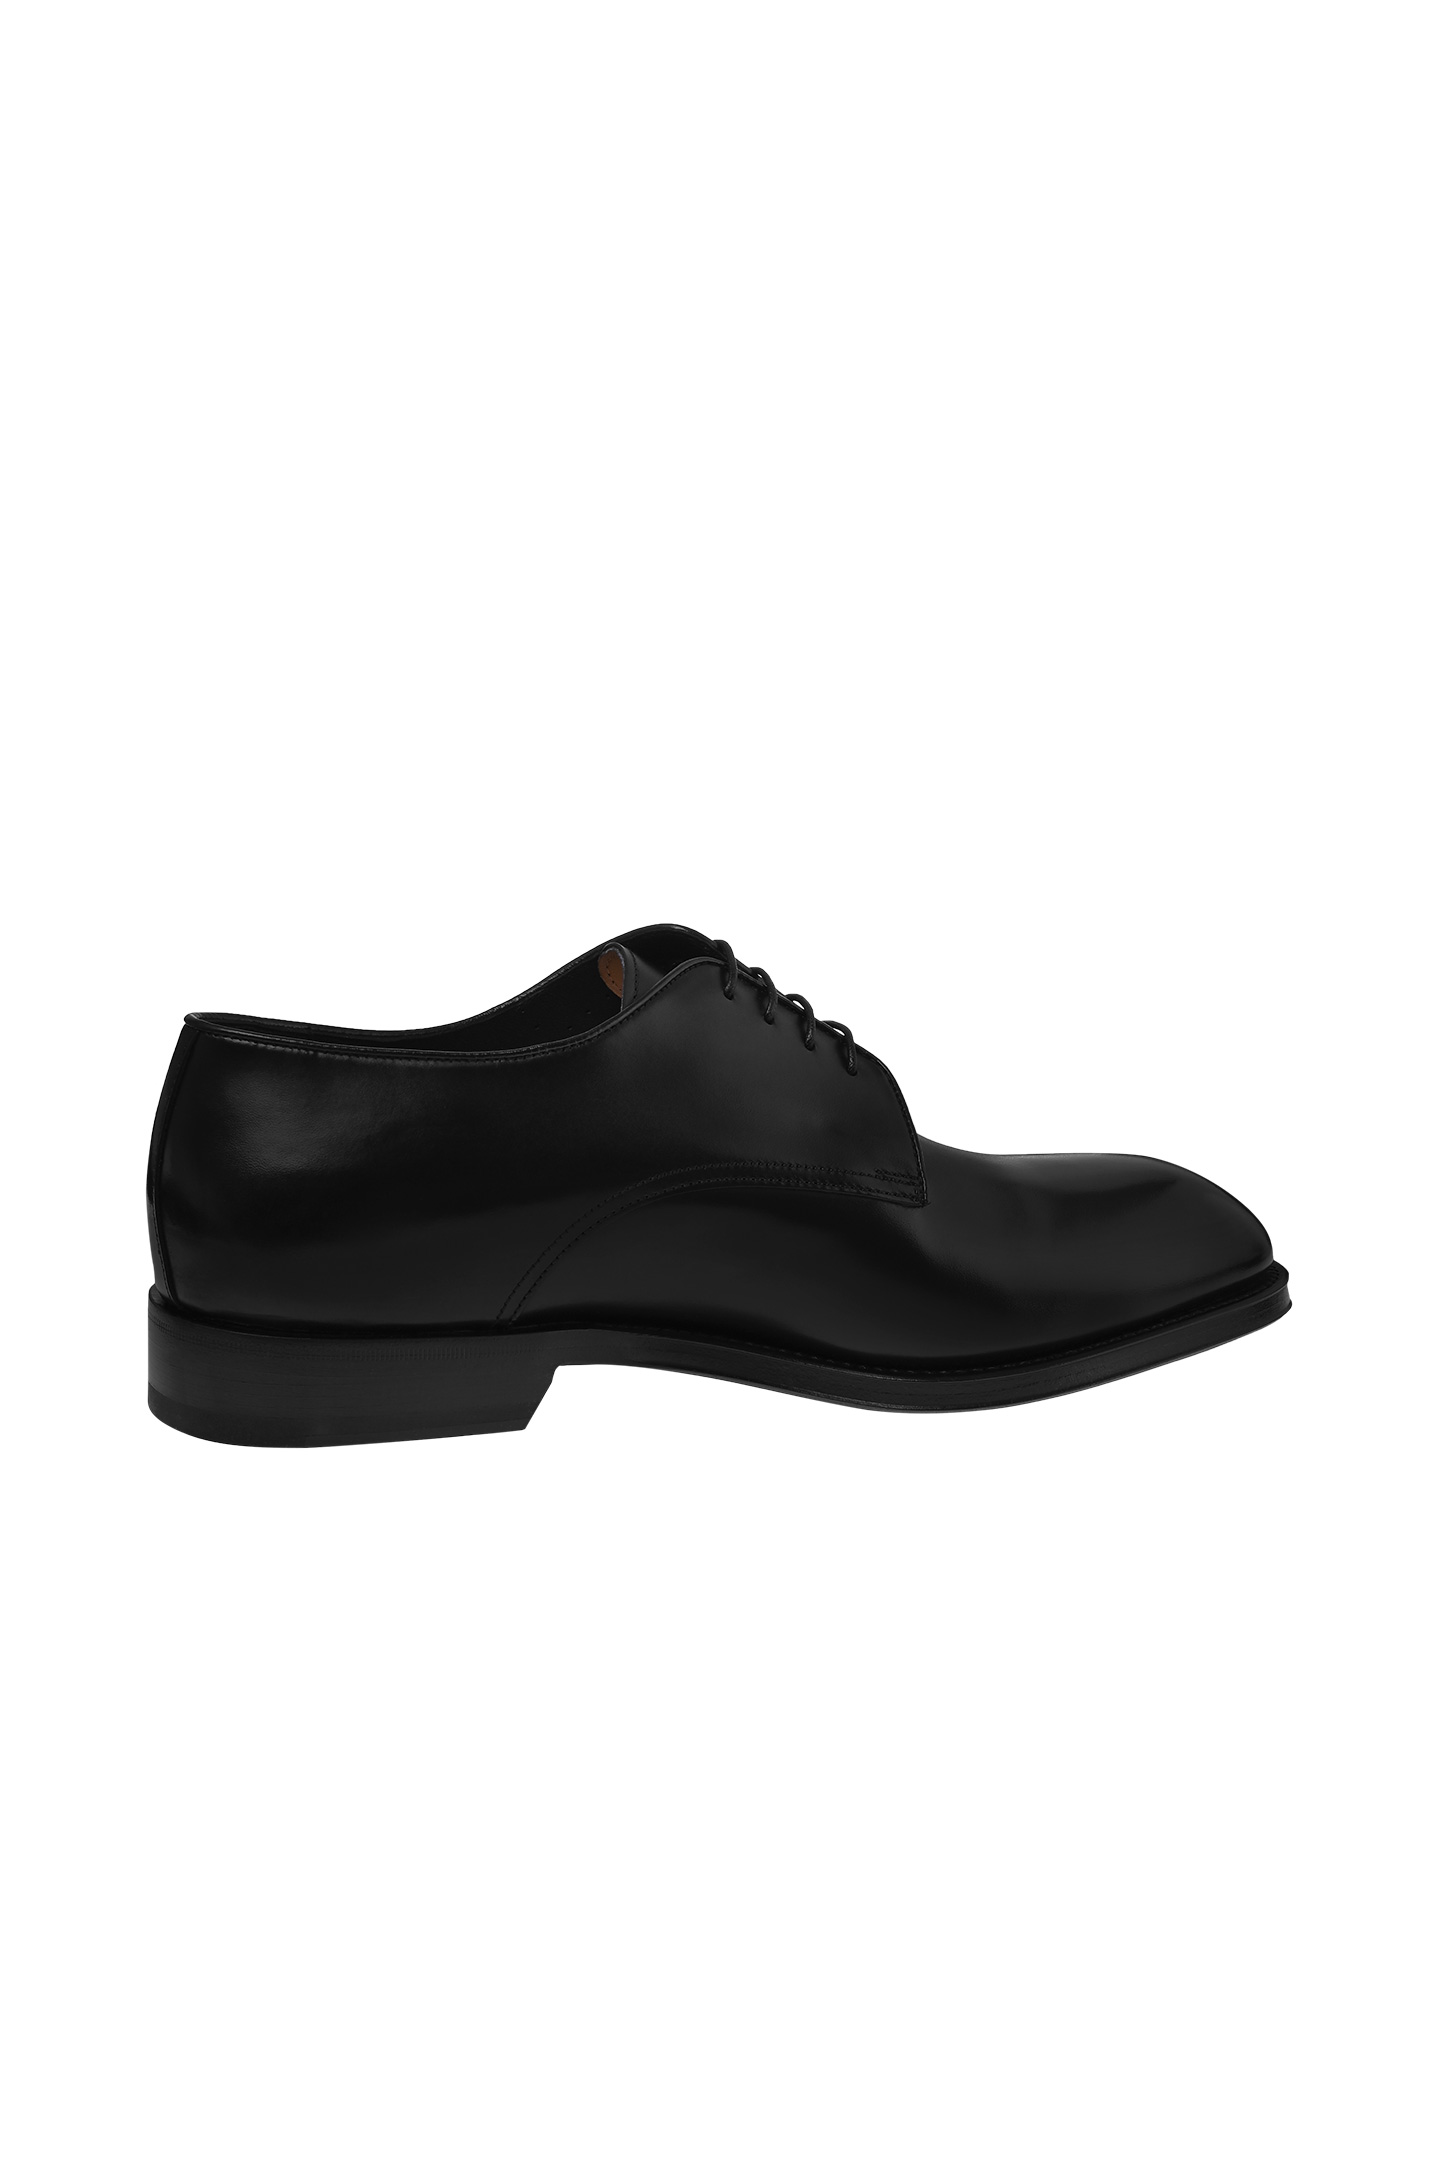 Туфли SANTONI MCJG18597PB1HOBRN01, цвет: Черный, Мужской